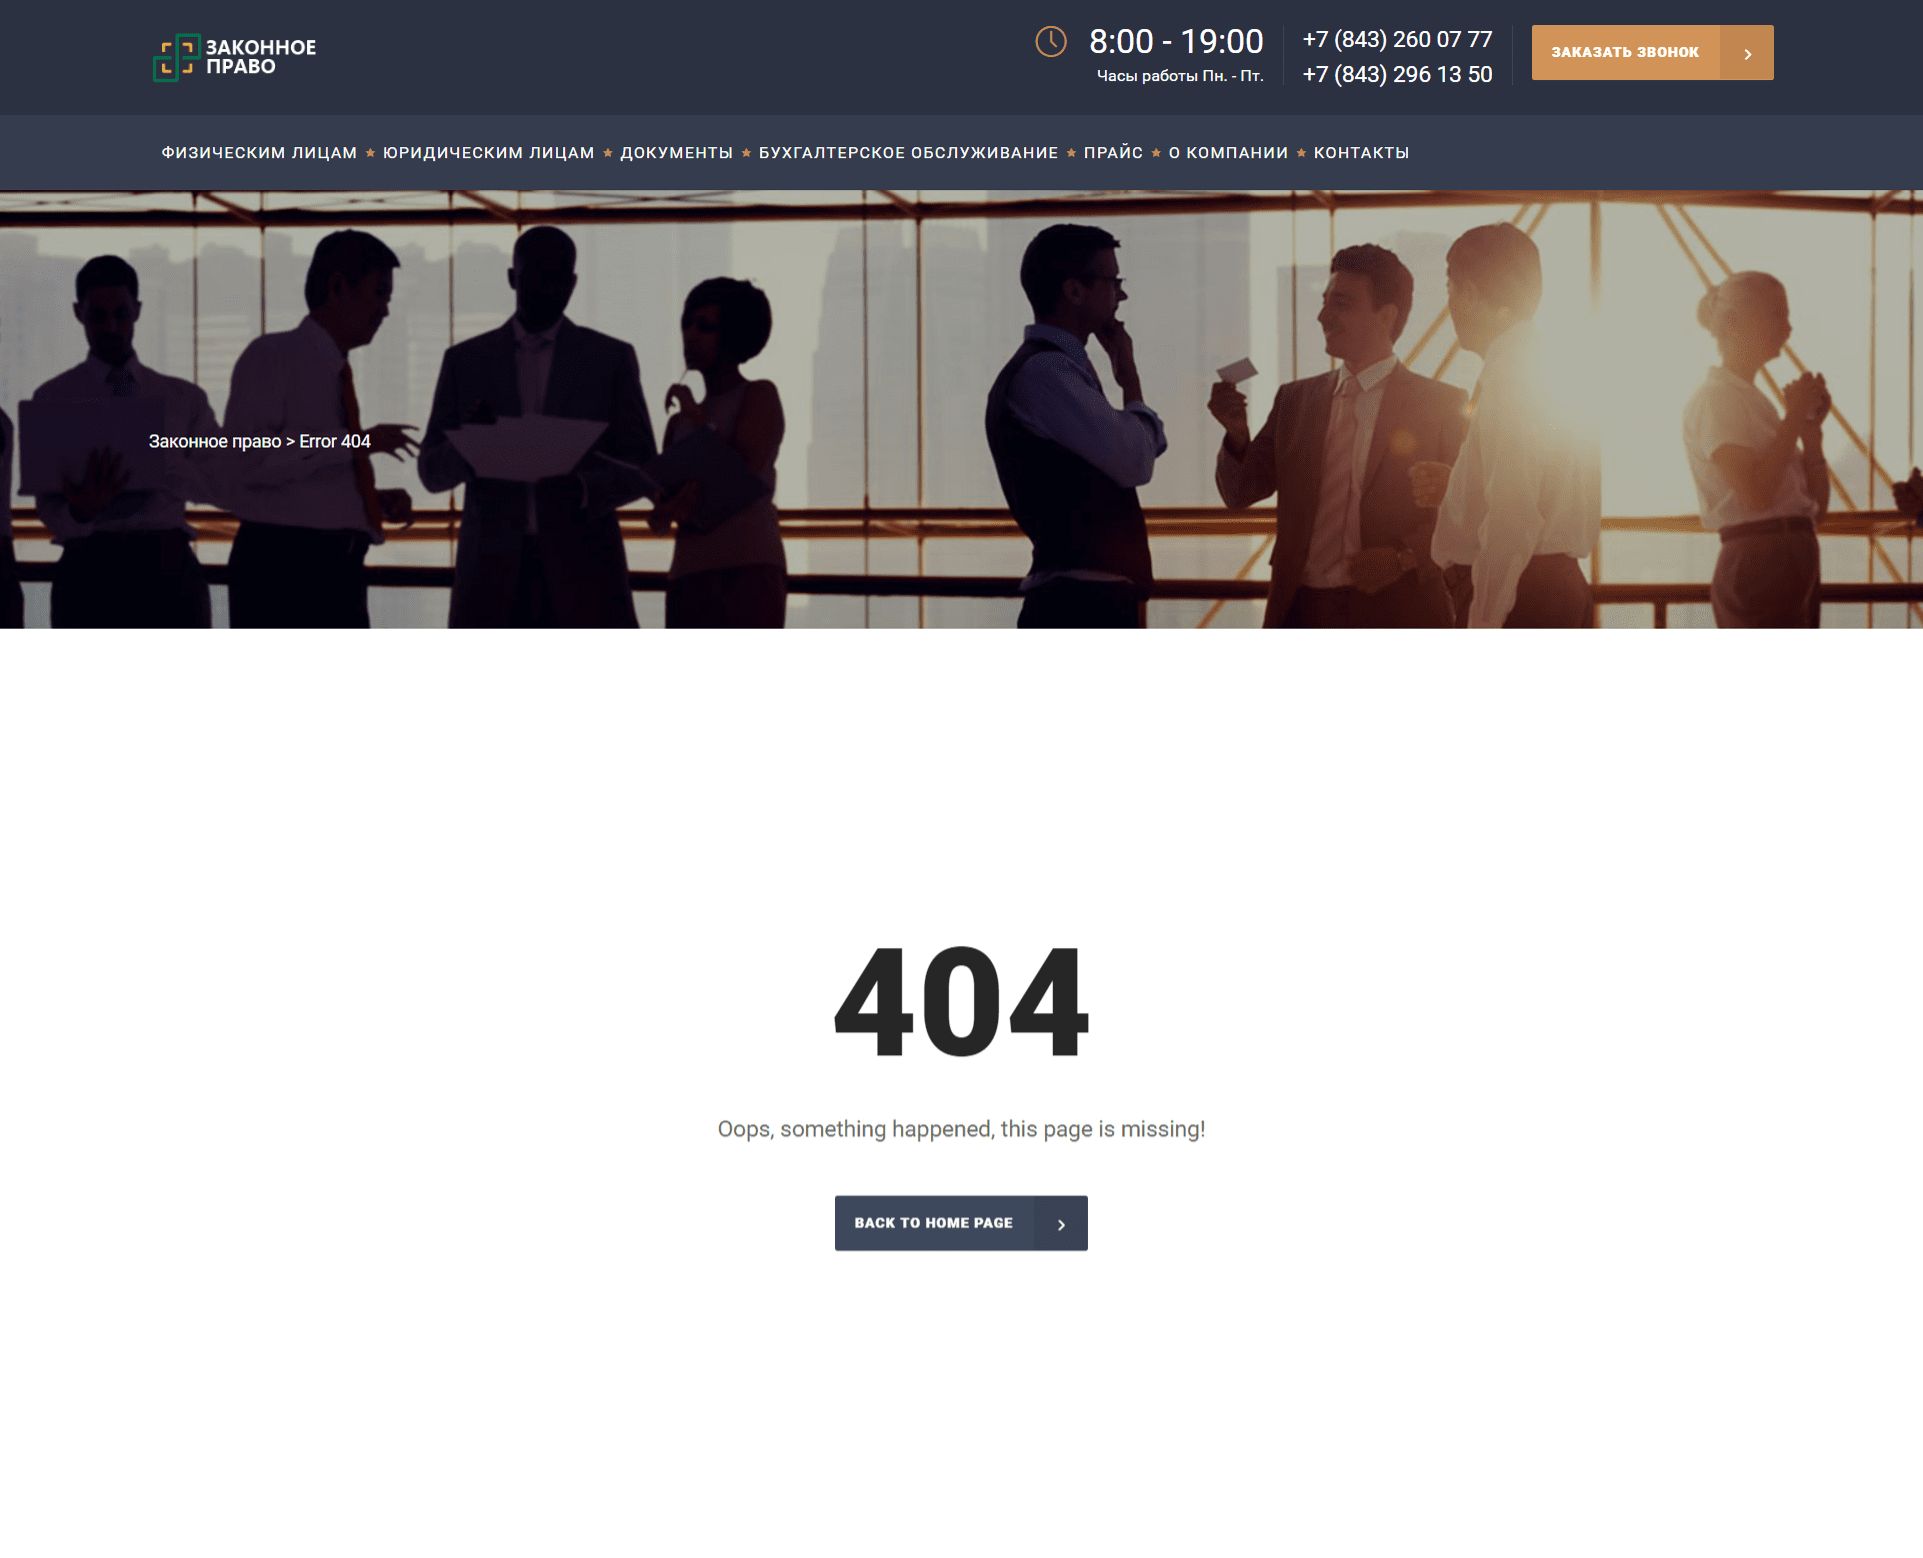 Сайт русский, а страница 404 на английском